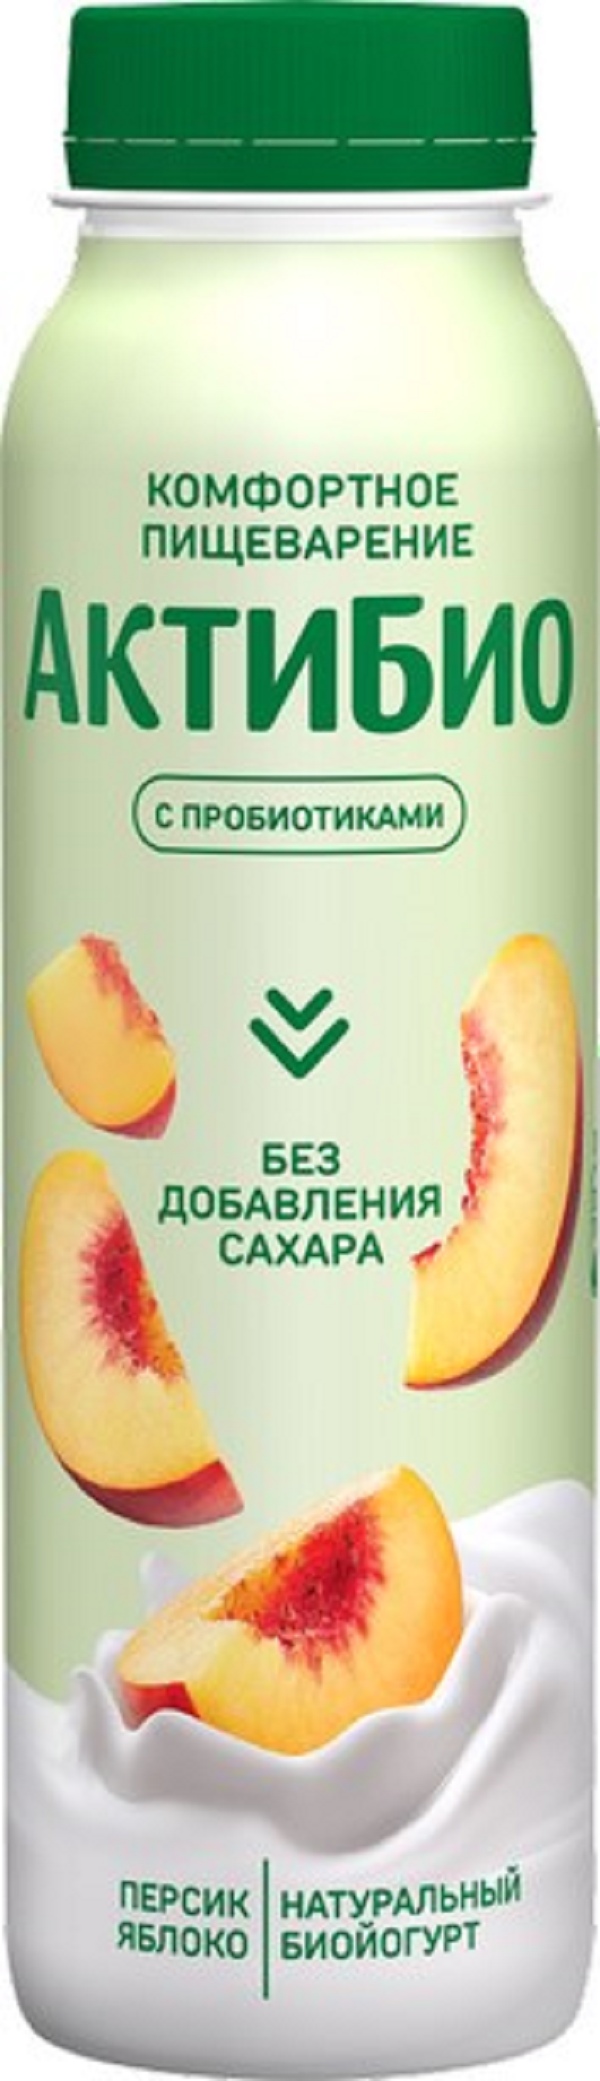 Йогурт АктиБио питьевой, с яблоком и персиком, без сахара, 1,5%, 260 г